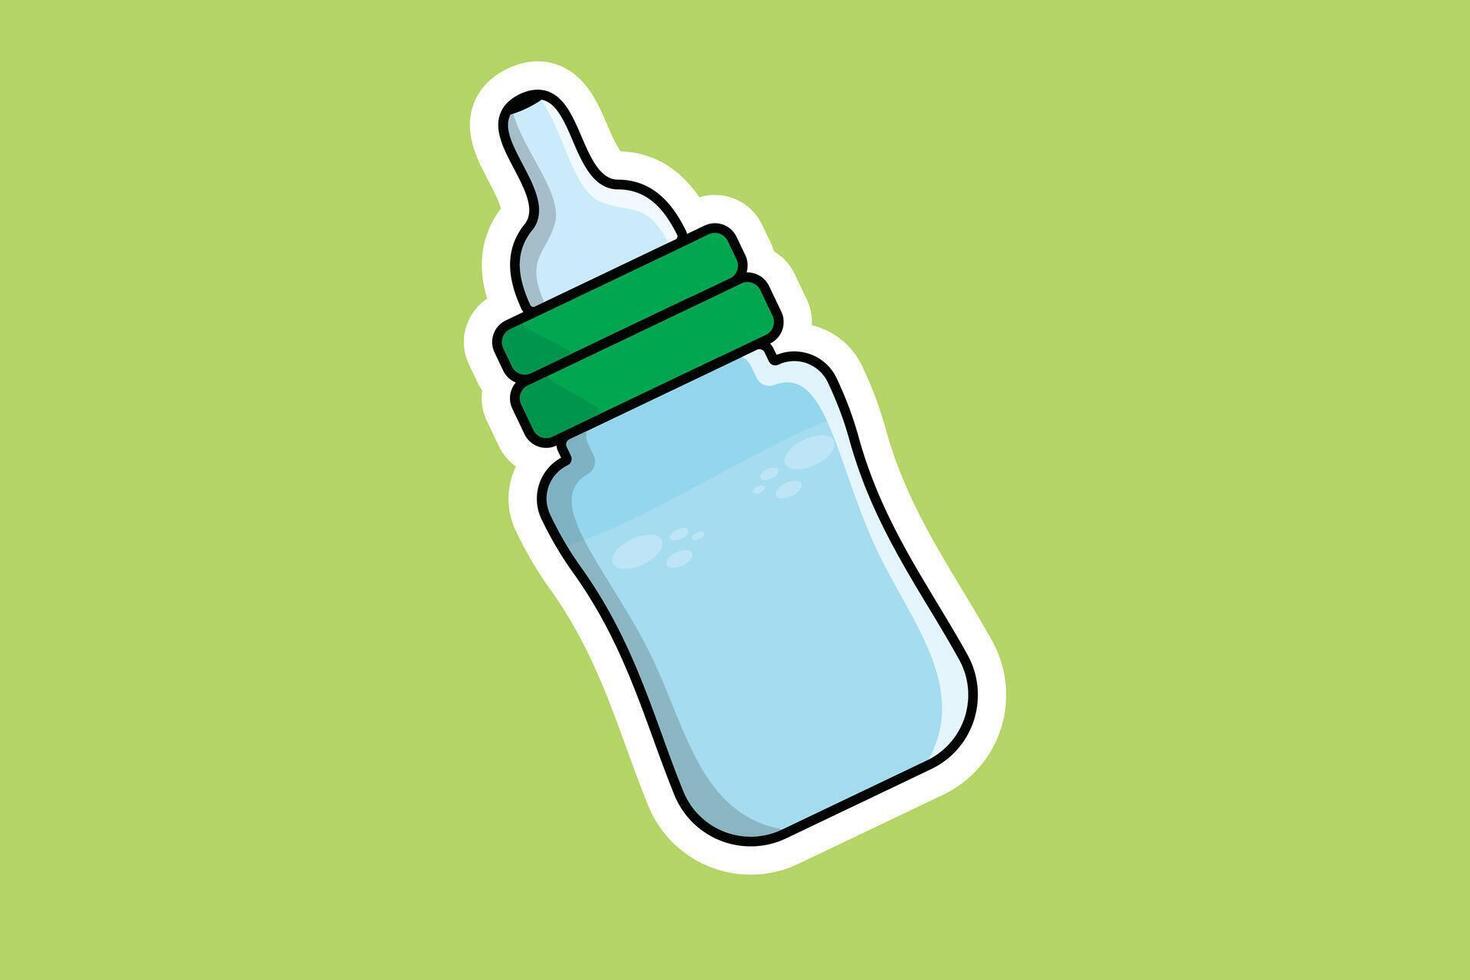 del bambino latte bottiglia etichetta vettore illustrazione. persone bevanda oggetti icona concetto. neonato bambino plastica acqua e latte bottiglia etichetta vettore design con ombra.